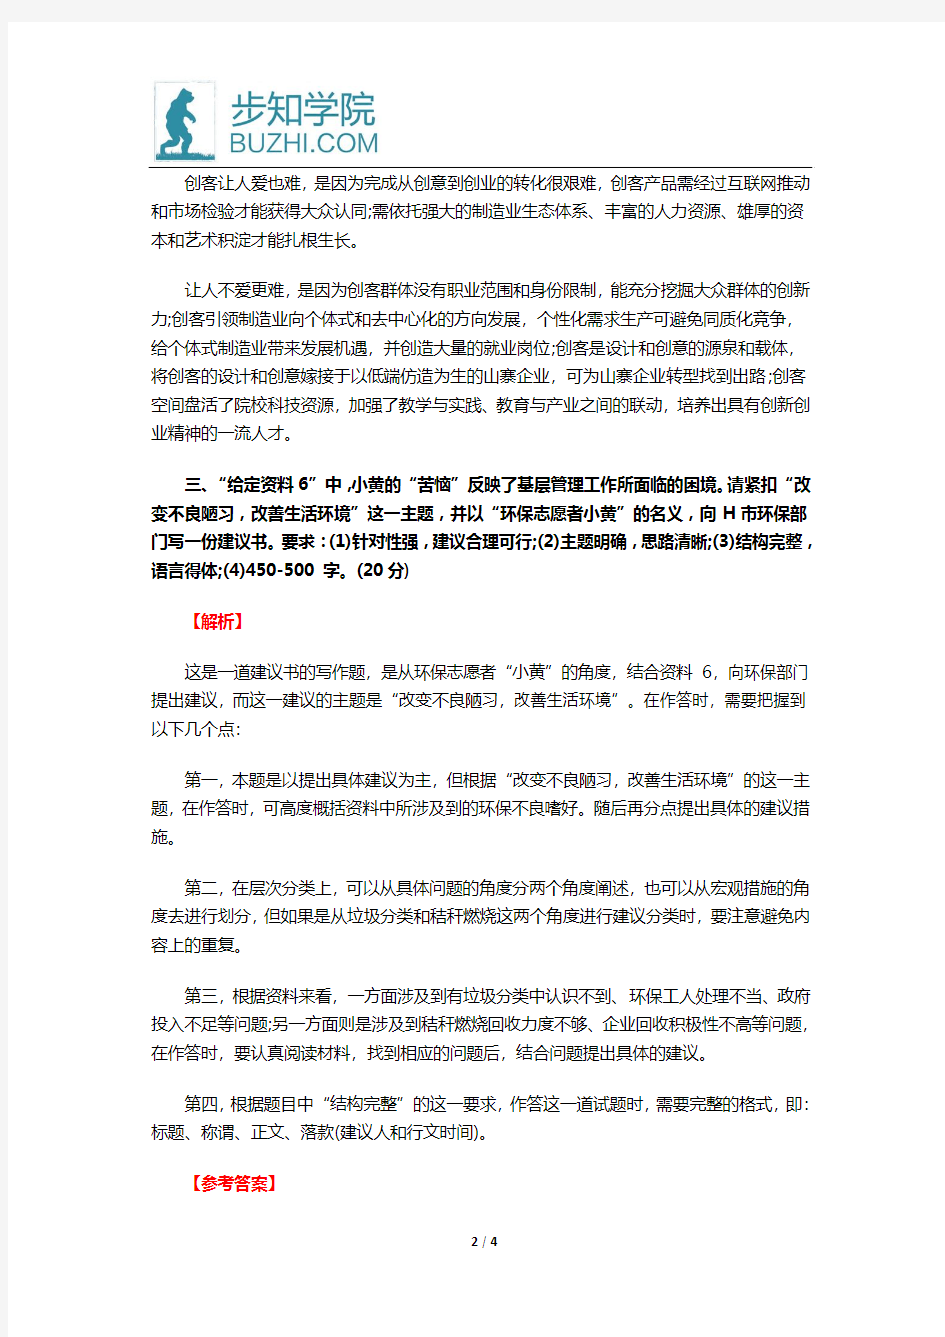 2015年安徽省考申论A卷真题及参考答案